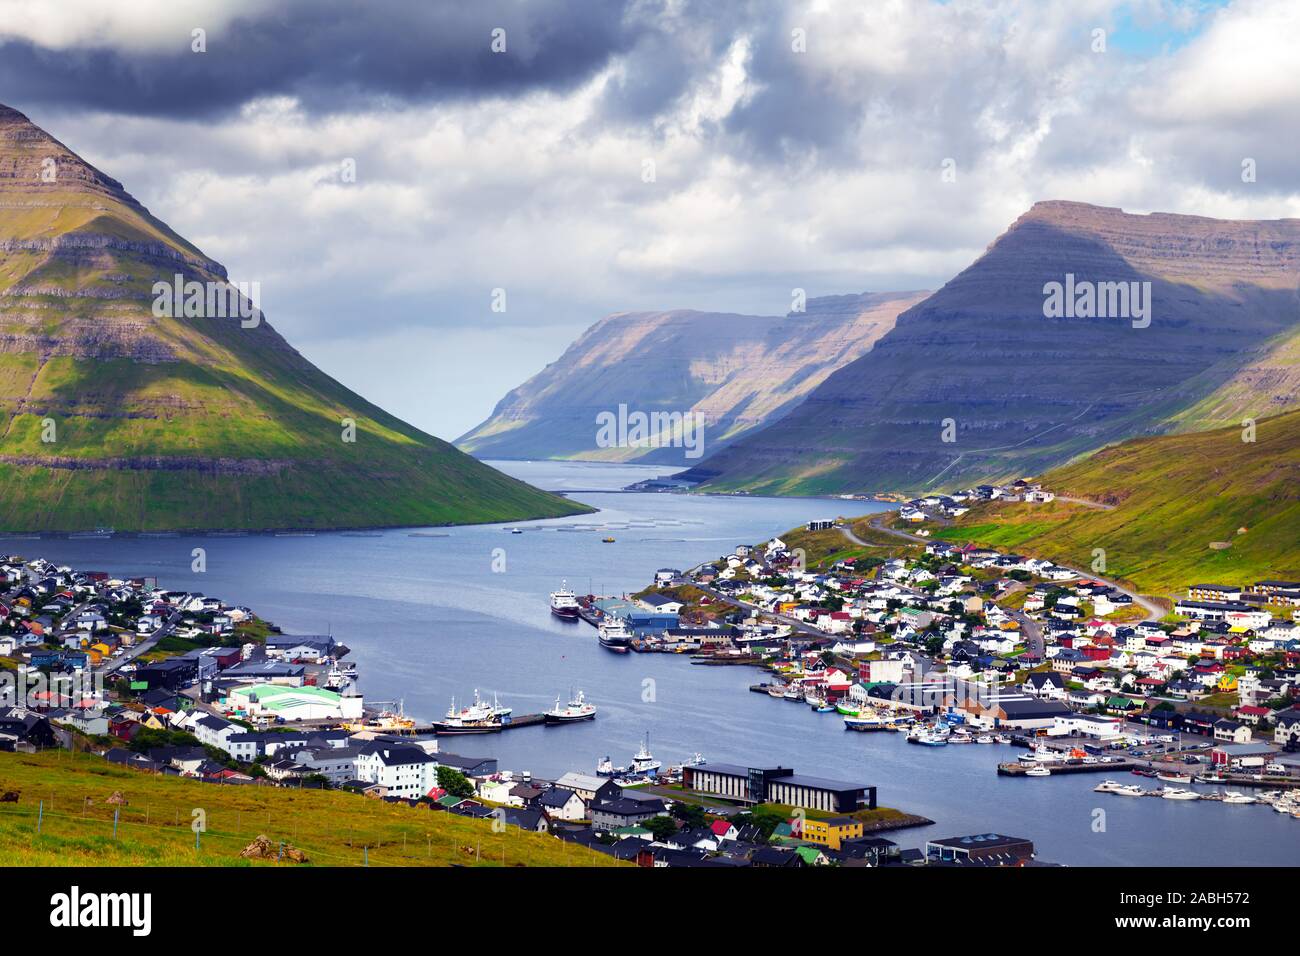 Atemberaubende Stadtbild von klaksvik Stadt mit Fjord und trübe Berge, bordoy Island, Färöer, Dänemark. Landschaftsfotografie Stockfoto